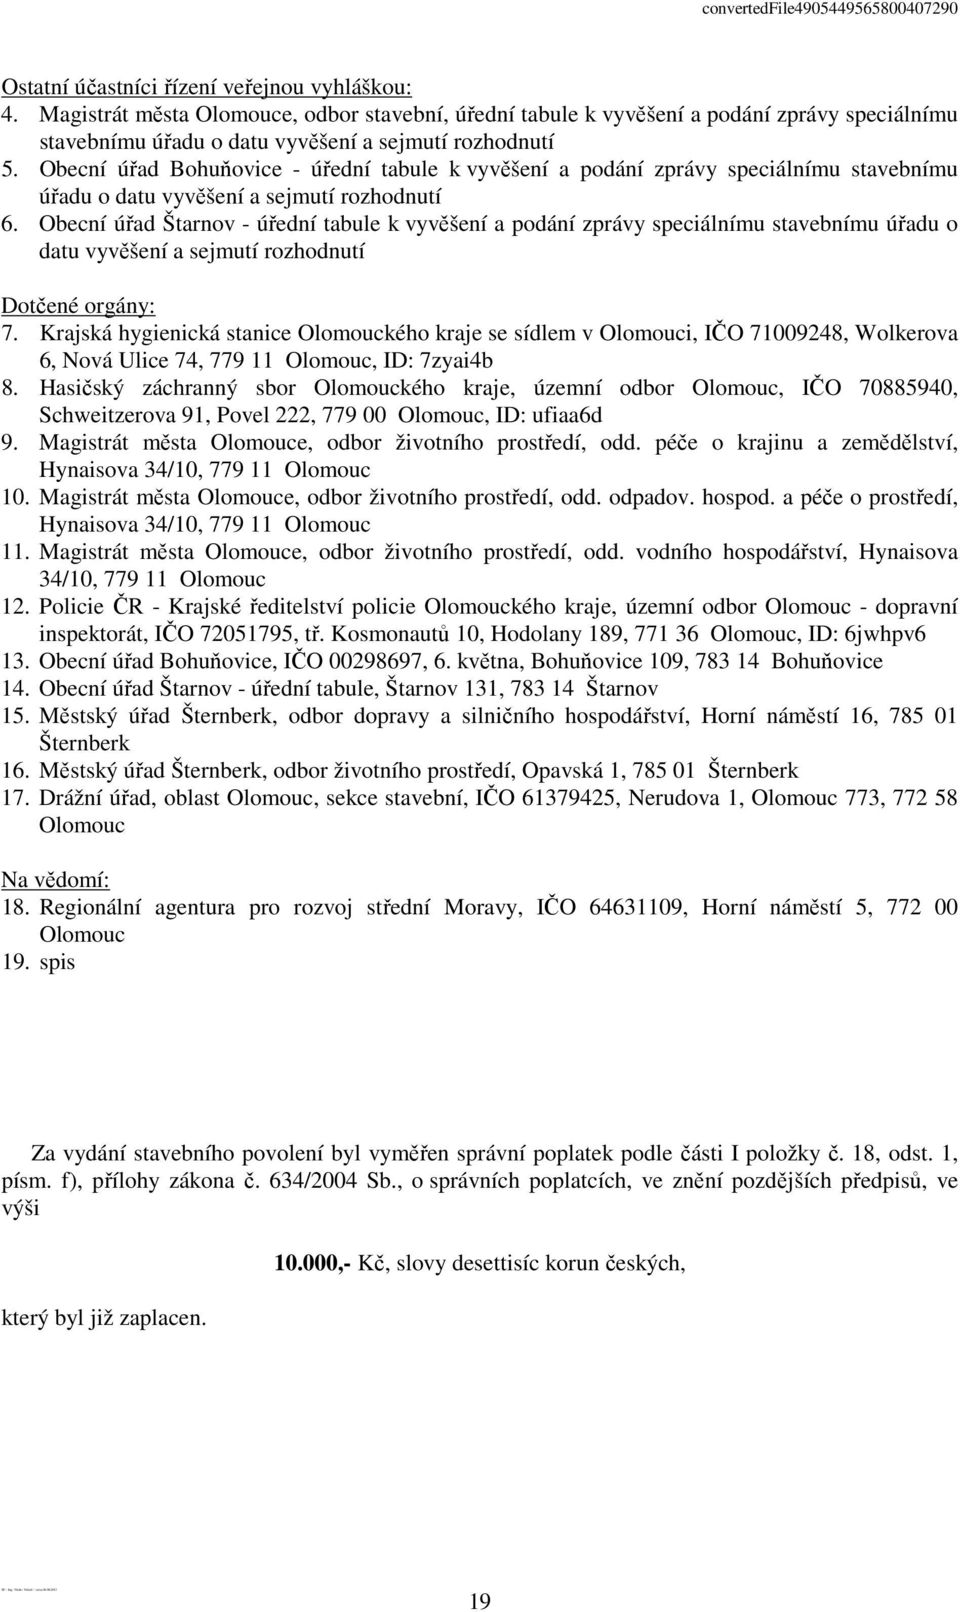 Obecní úřad Štarnov - úřední tabule k vyvěšení a podání zprávy speciálnímu stavebnímu úřadu o datu vyvěšení a sejmutí rozhodnutí Dotčené orgány: 7.